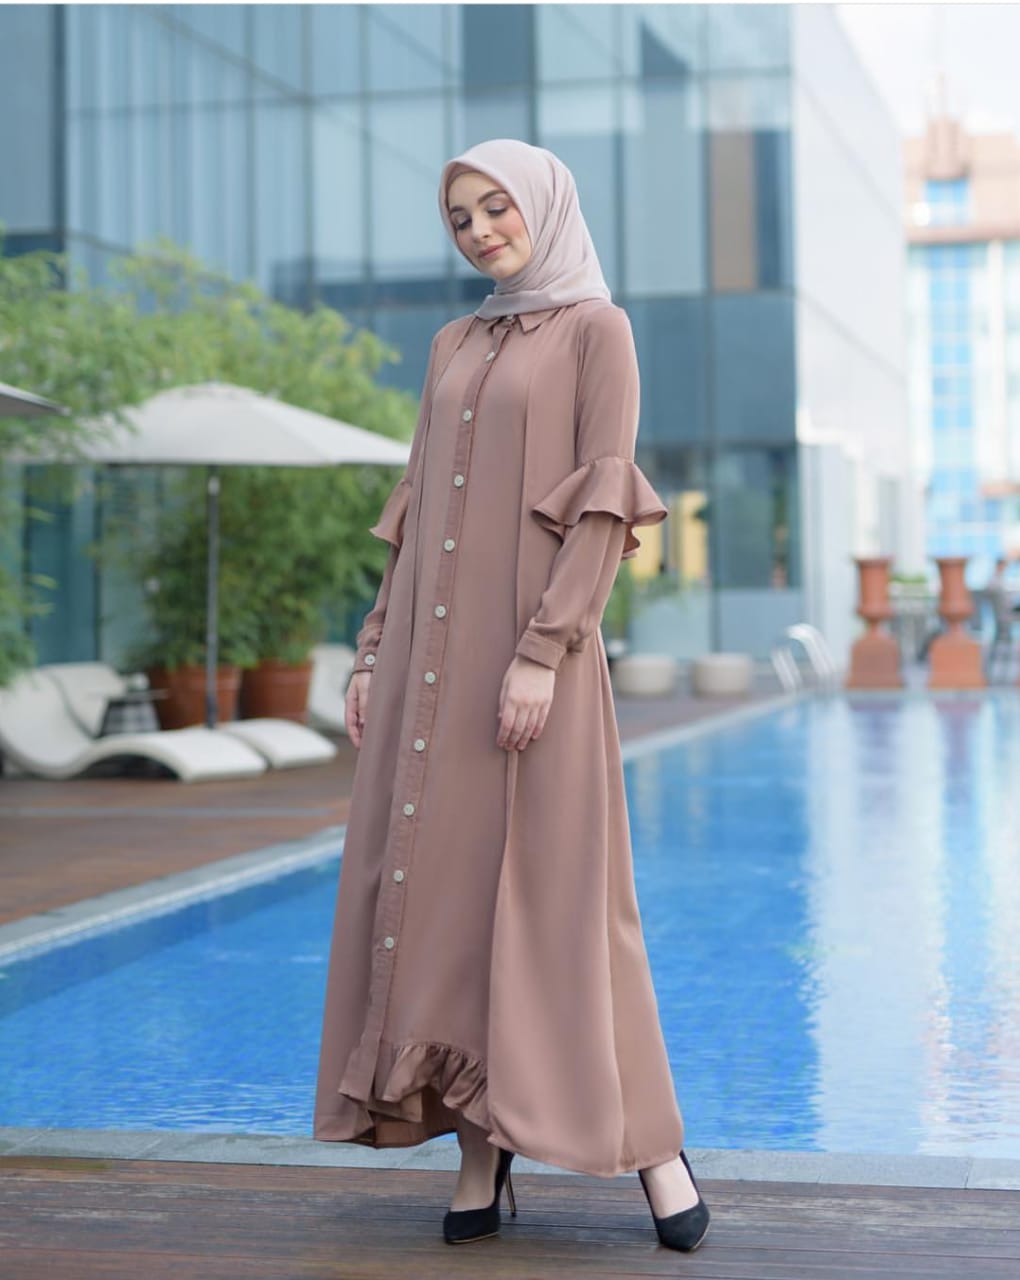 Pabrik Baju DIVA MAXI Bahan Mosscrepe Gamis Wanita Murah Maxi Dress Gamis Kondangan Gamis Terbaru 2020 Modern